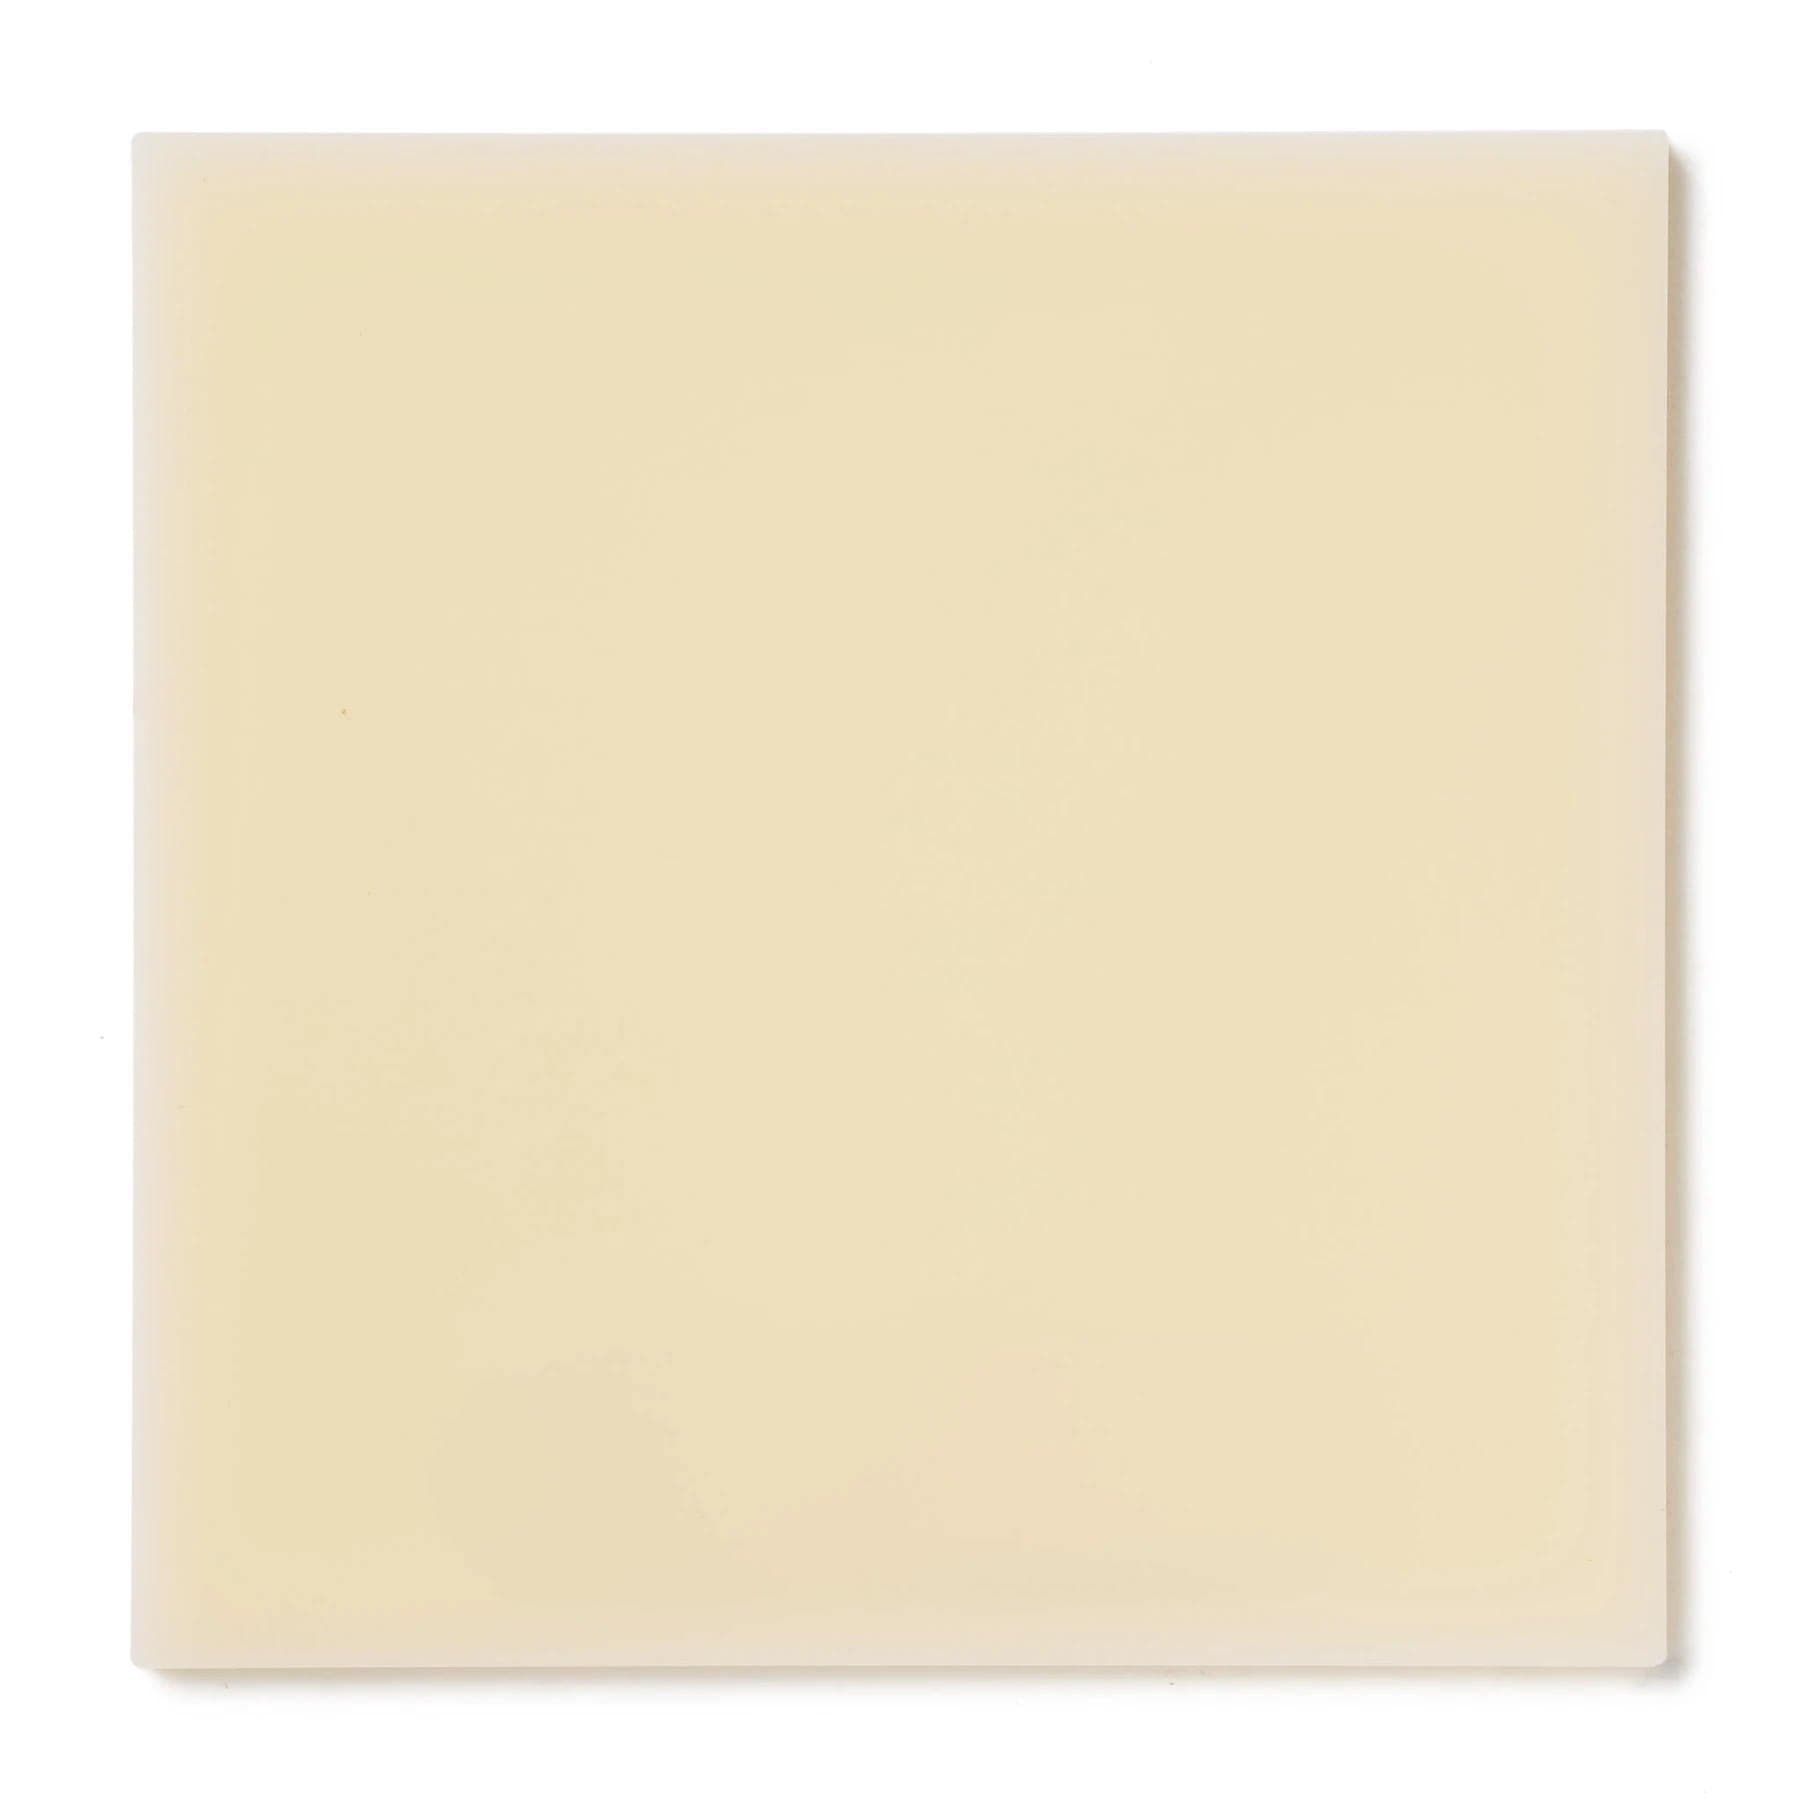 Acrylic Sheet 1/8" Ivory Translucent #2146